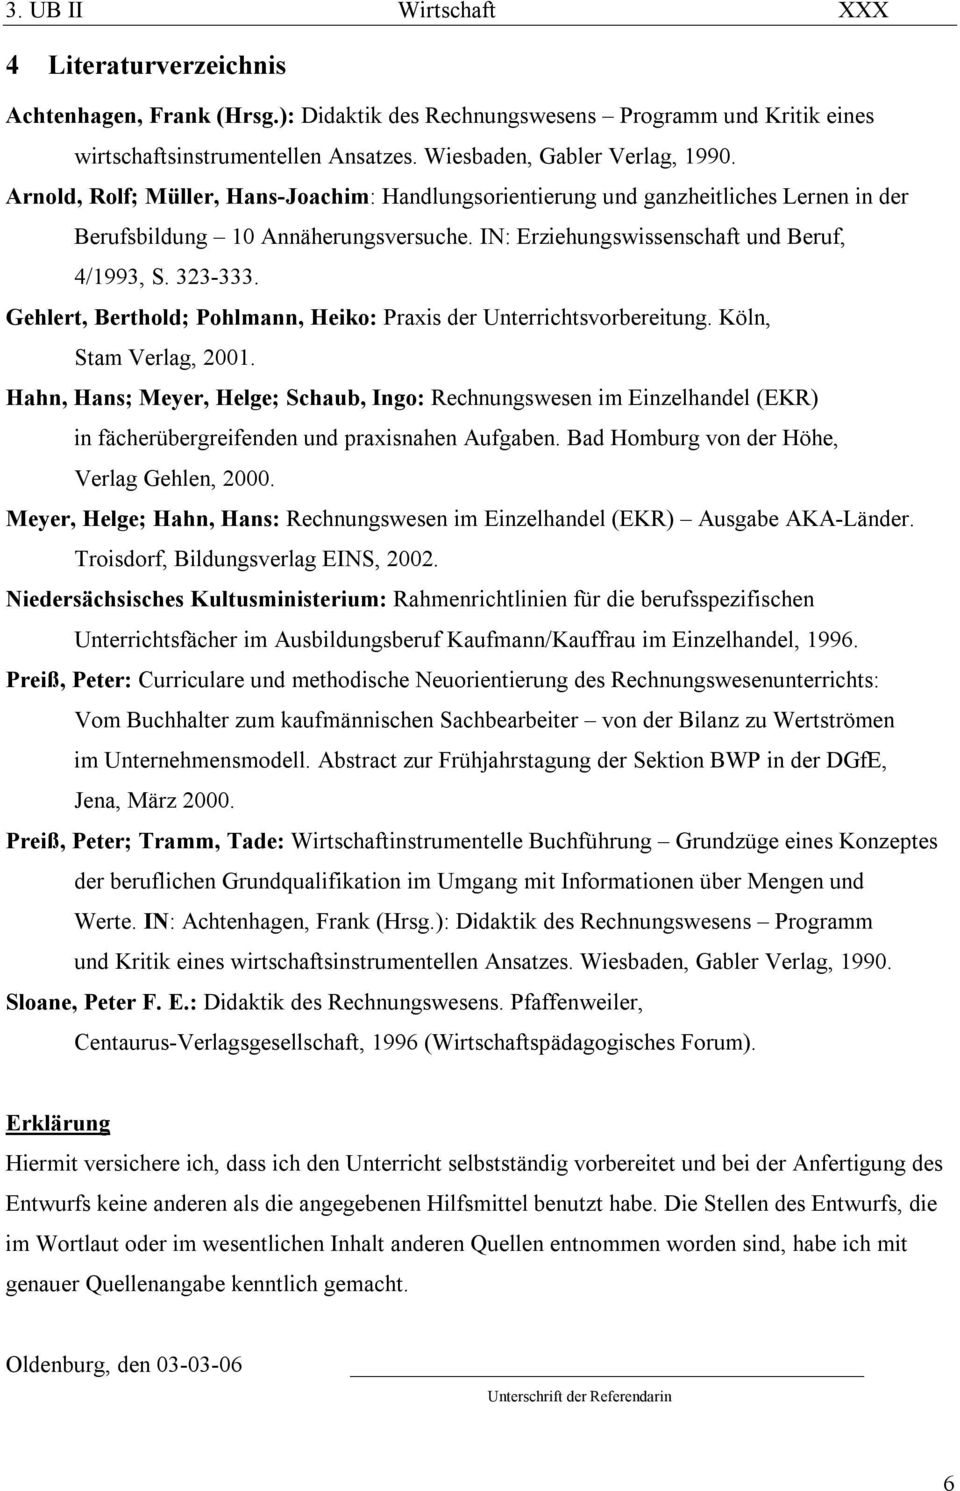 Gehlert, Berthold; Pohlmann, Heiko: Praxis der Unterrichtsvorbereitung. Köln, Stam Verlag, 2001.